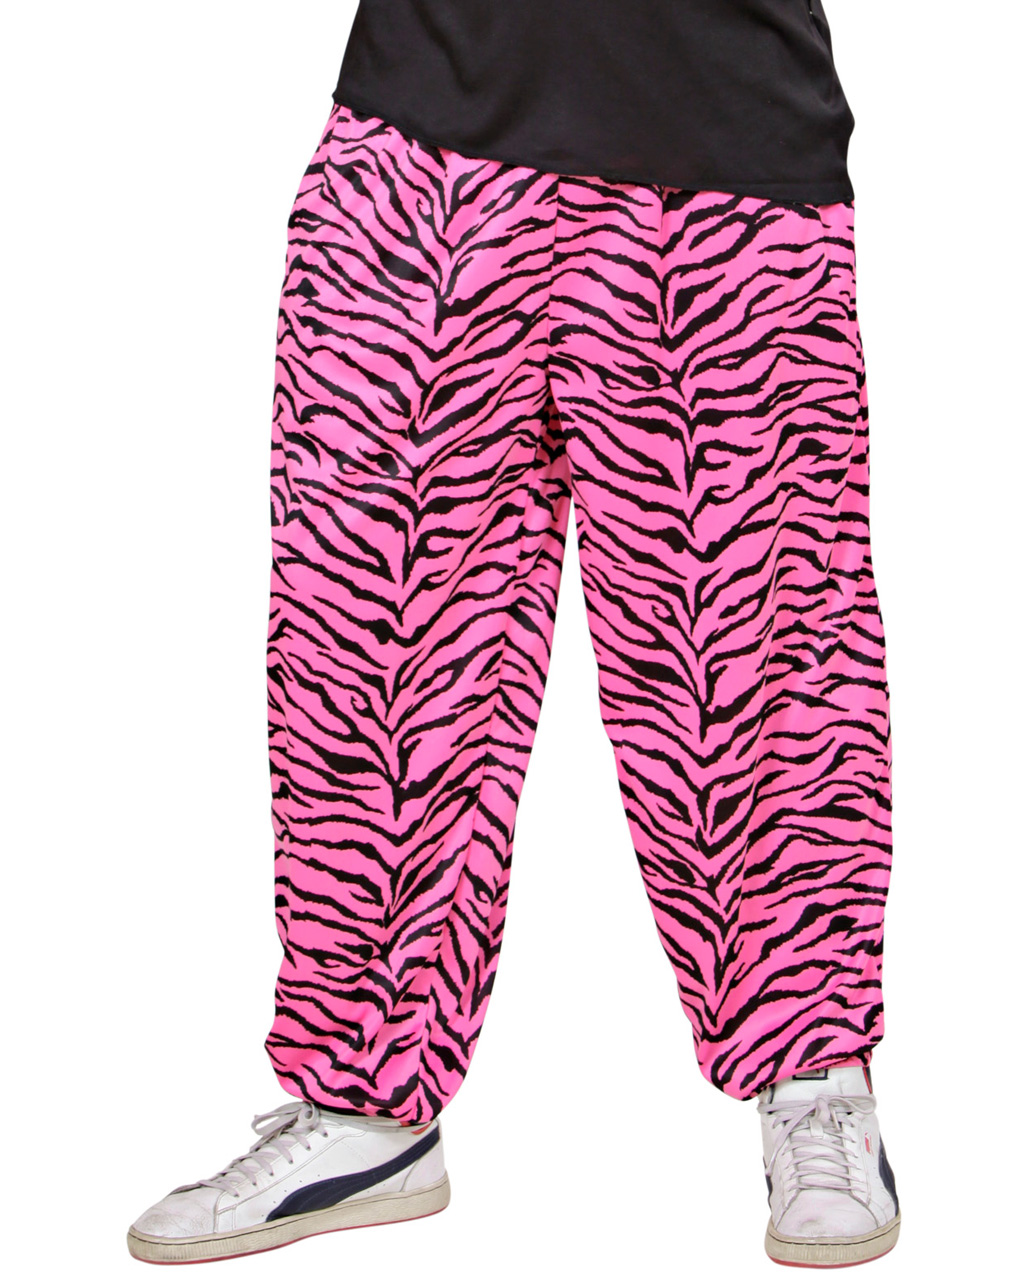 https://inst-1.cdn.shockers.de/hs_cdn/out/pictures/master/product/1/80er-jahre-pink-zebra-jogging-hose-80ies-traingshose-80ies-pink-zebra-baggy-pants-bad-taste-kostueme-36611-01.jpg